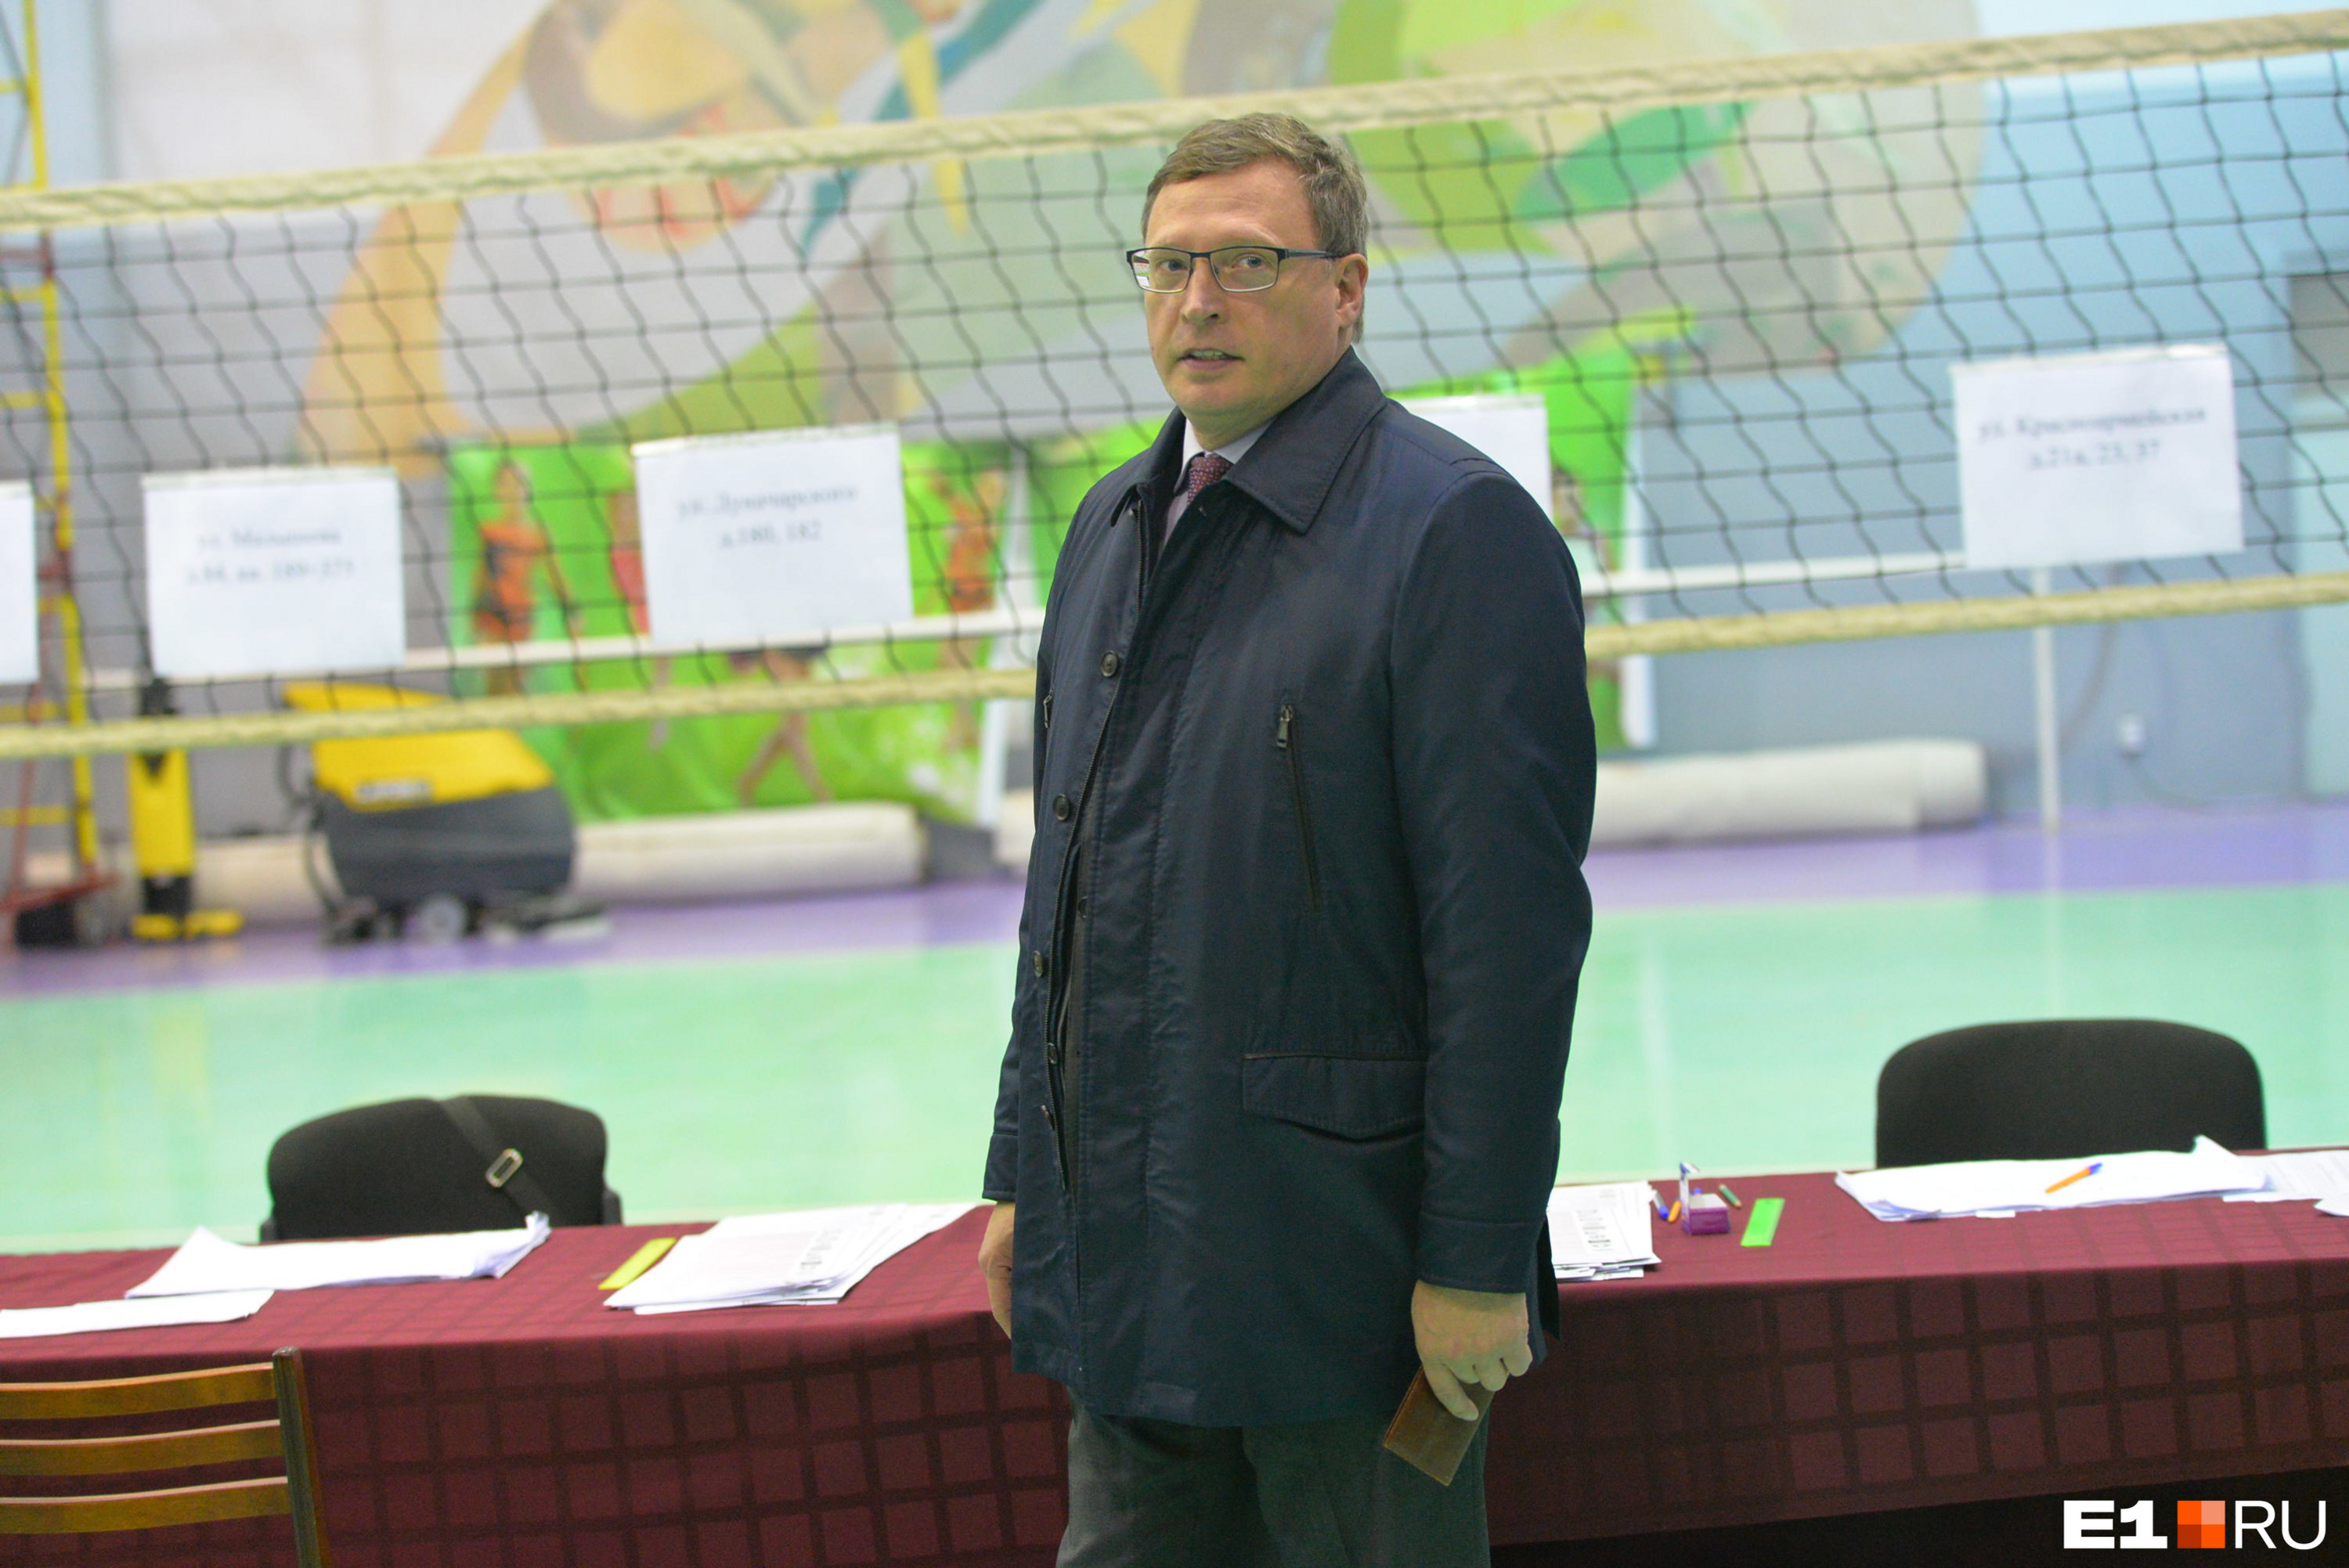 Когда Александр Бурков шел на выборы губернатора Свердловской области (в 1999 году), вряд ли он представлял себе, что окажется на губернаторском посту в Омске спустя 17 лет